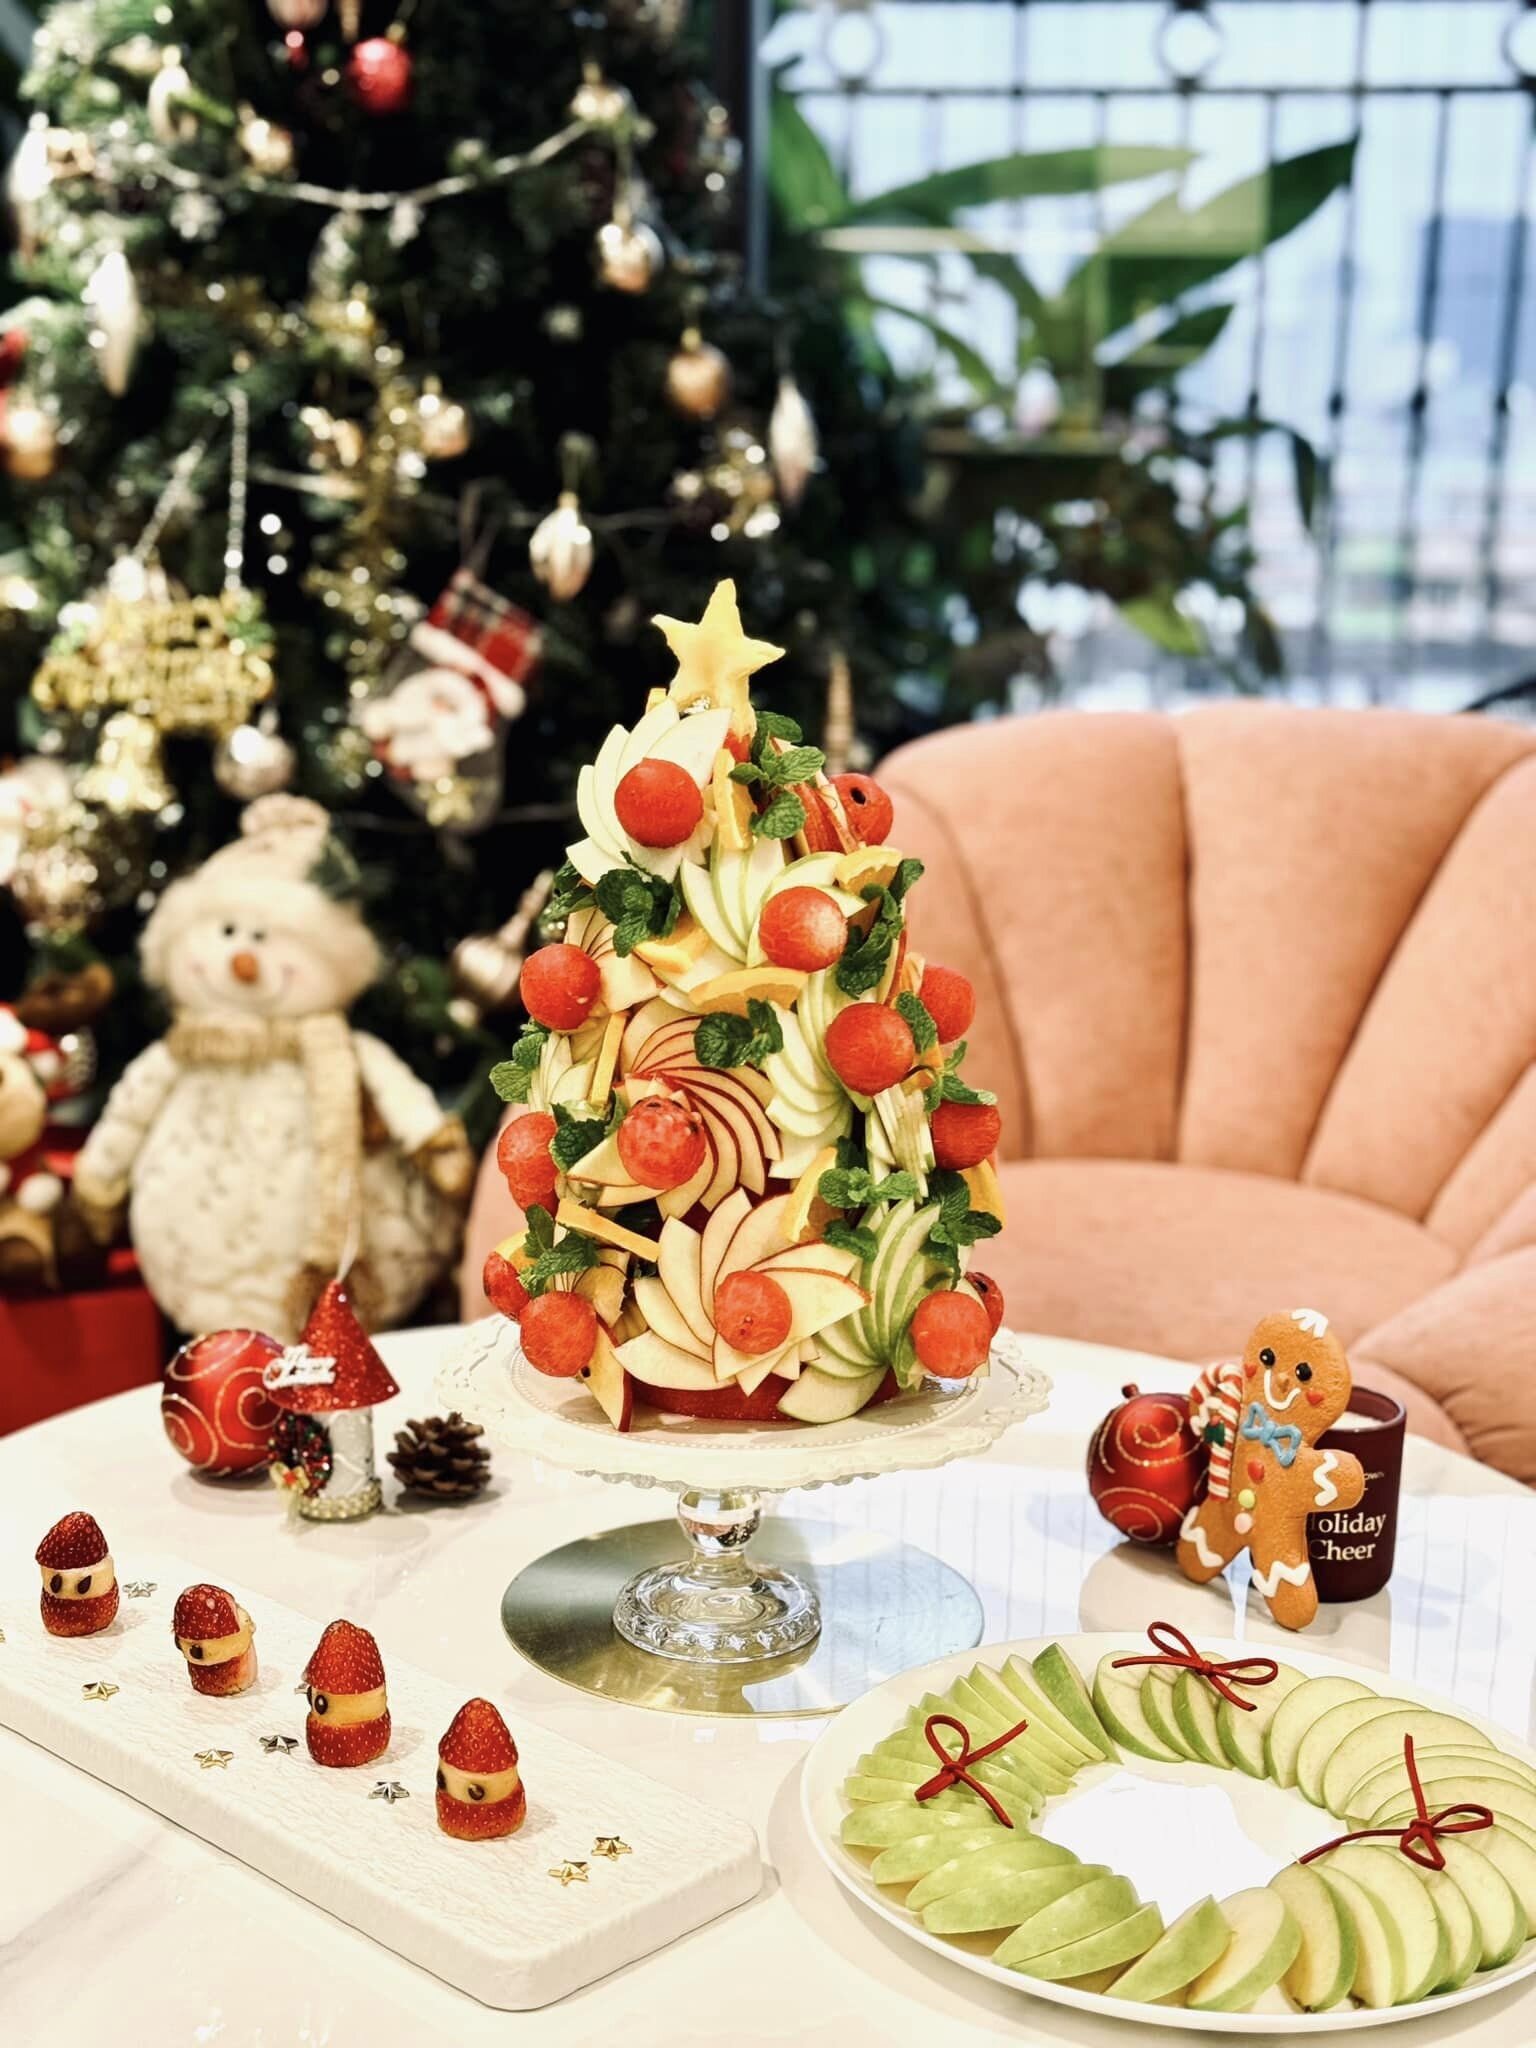 Lễ Giáng sinh cận kề, hội chị em khéo tay lại được dịp bày biện, sắp xếp các loại trái cây thành hình cây thông Noel độc đáo, lạ mắt. Các nguyên liệu đều dễ tìm nên việc 